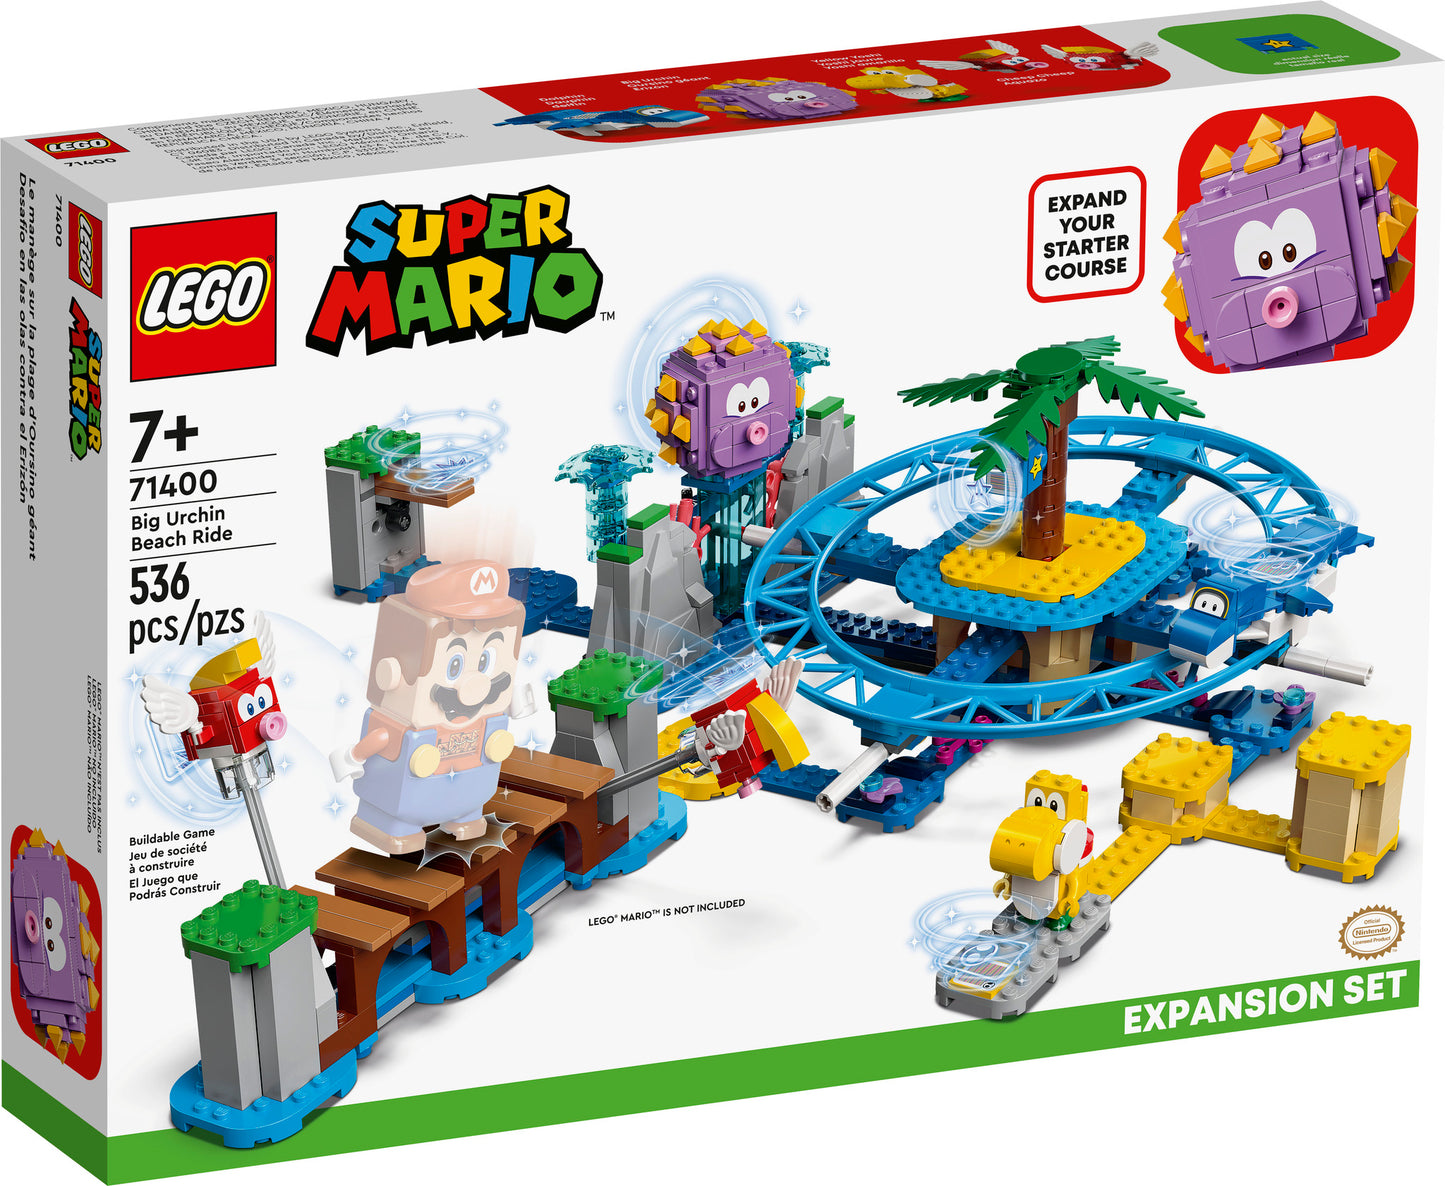 71400 LEGO Super Mario - Spiaggia del Ricciospino Gigante - Pack di Espansione